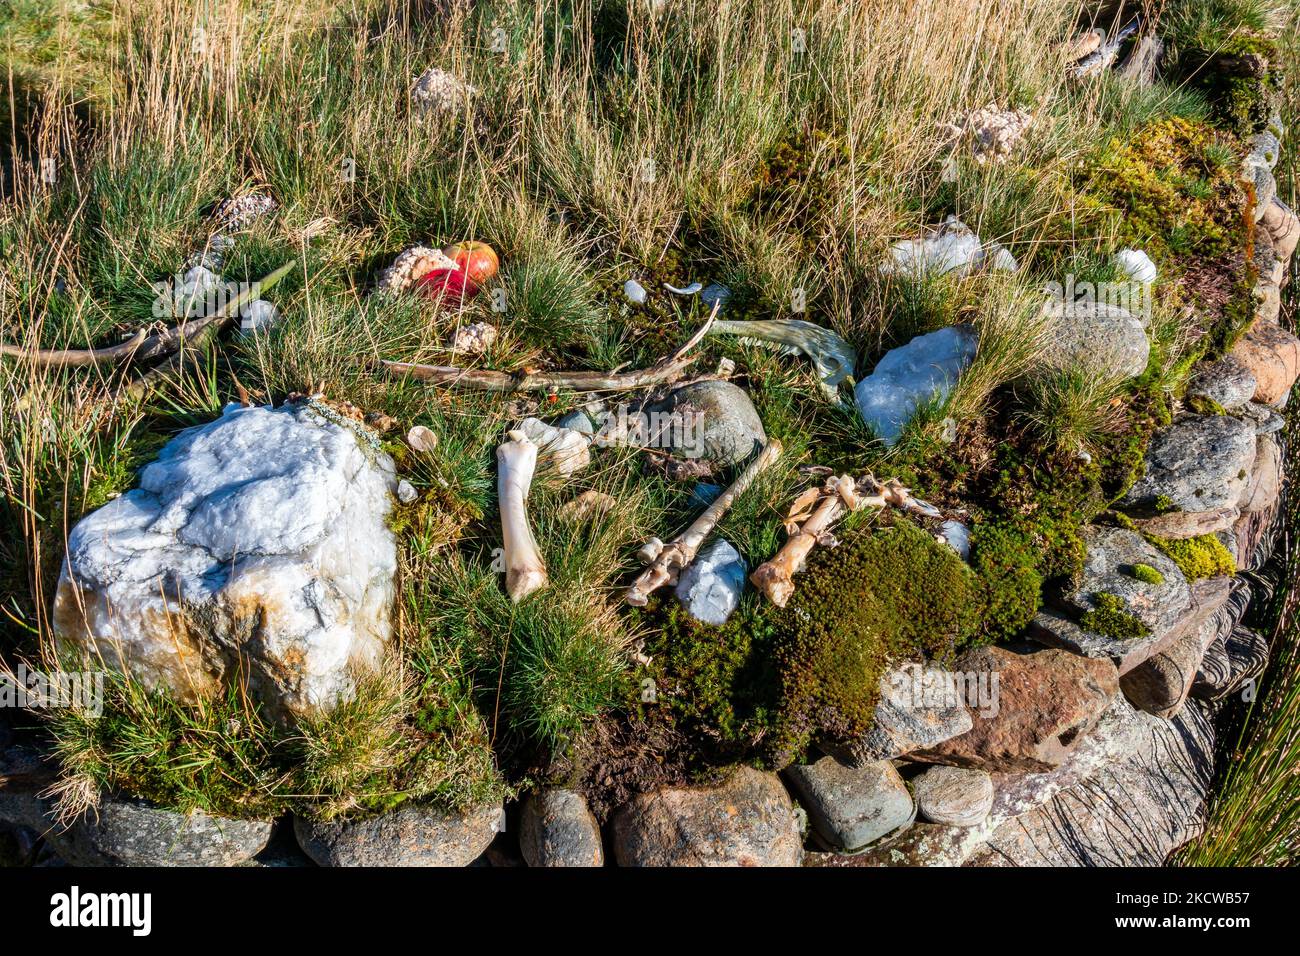 Knochen, die am heidnischen Schrein von Tigh Nam Bodach oder Tigh Nam Cailliche in der Nähe von Loch Lyon in Perthshire, Schottland, hinterlassen wurden, wo heilige Flusssteine enthalten sind Stockfoto